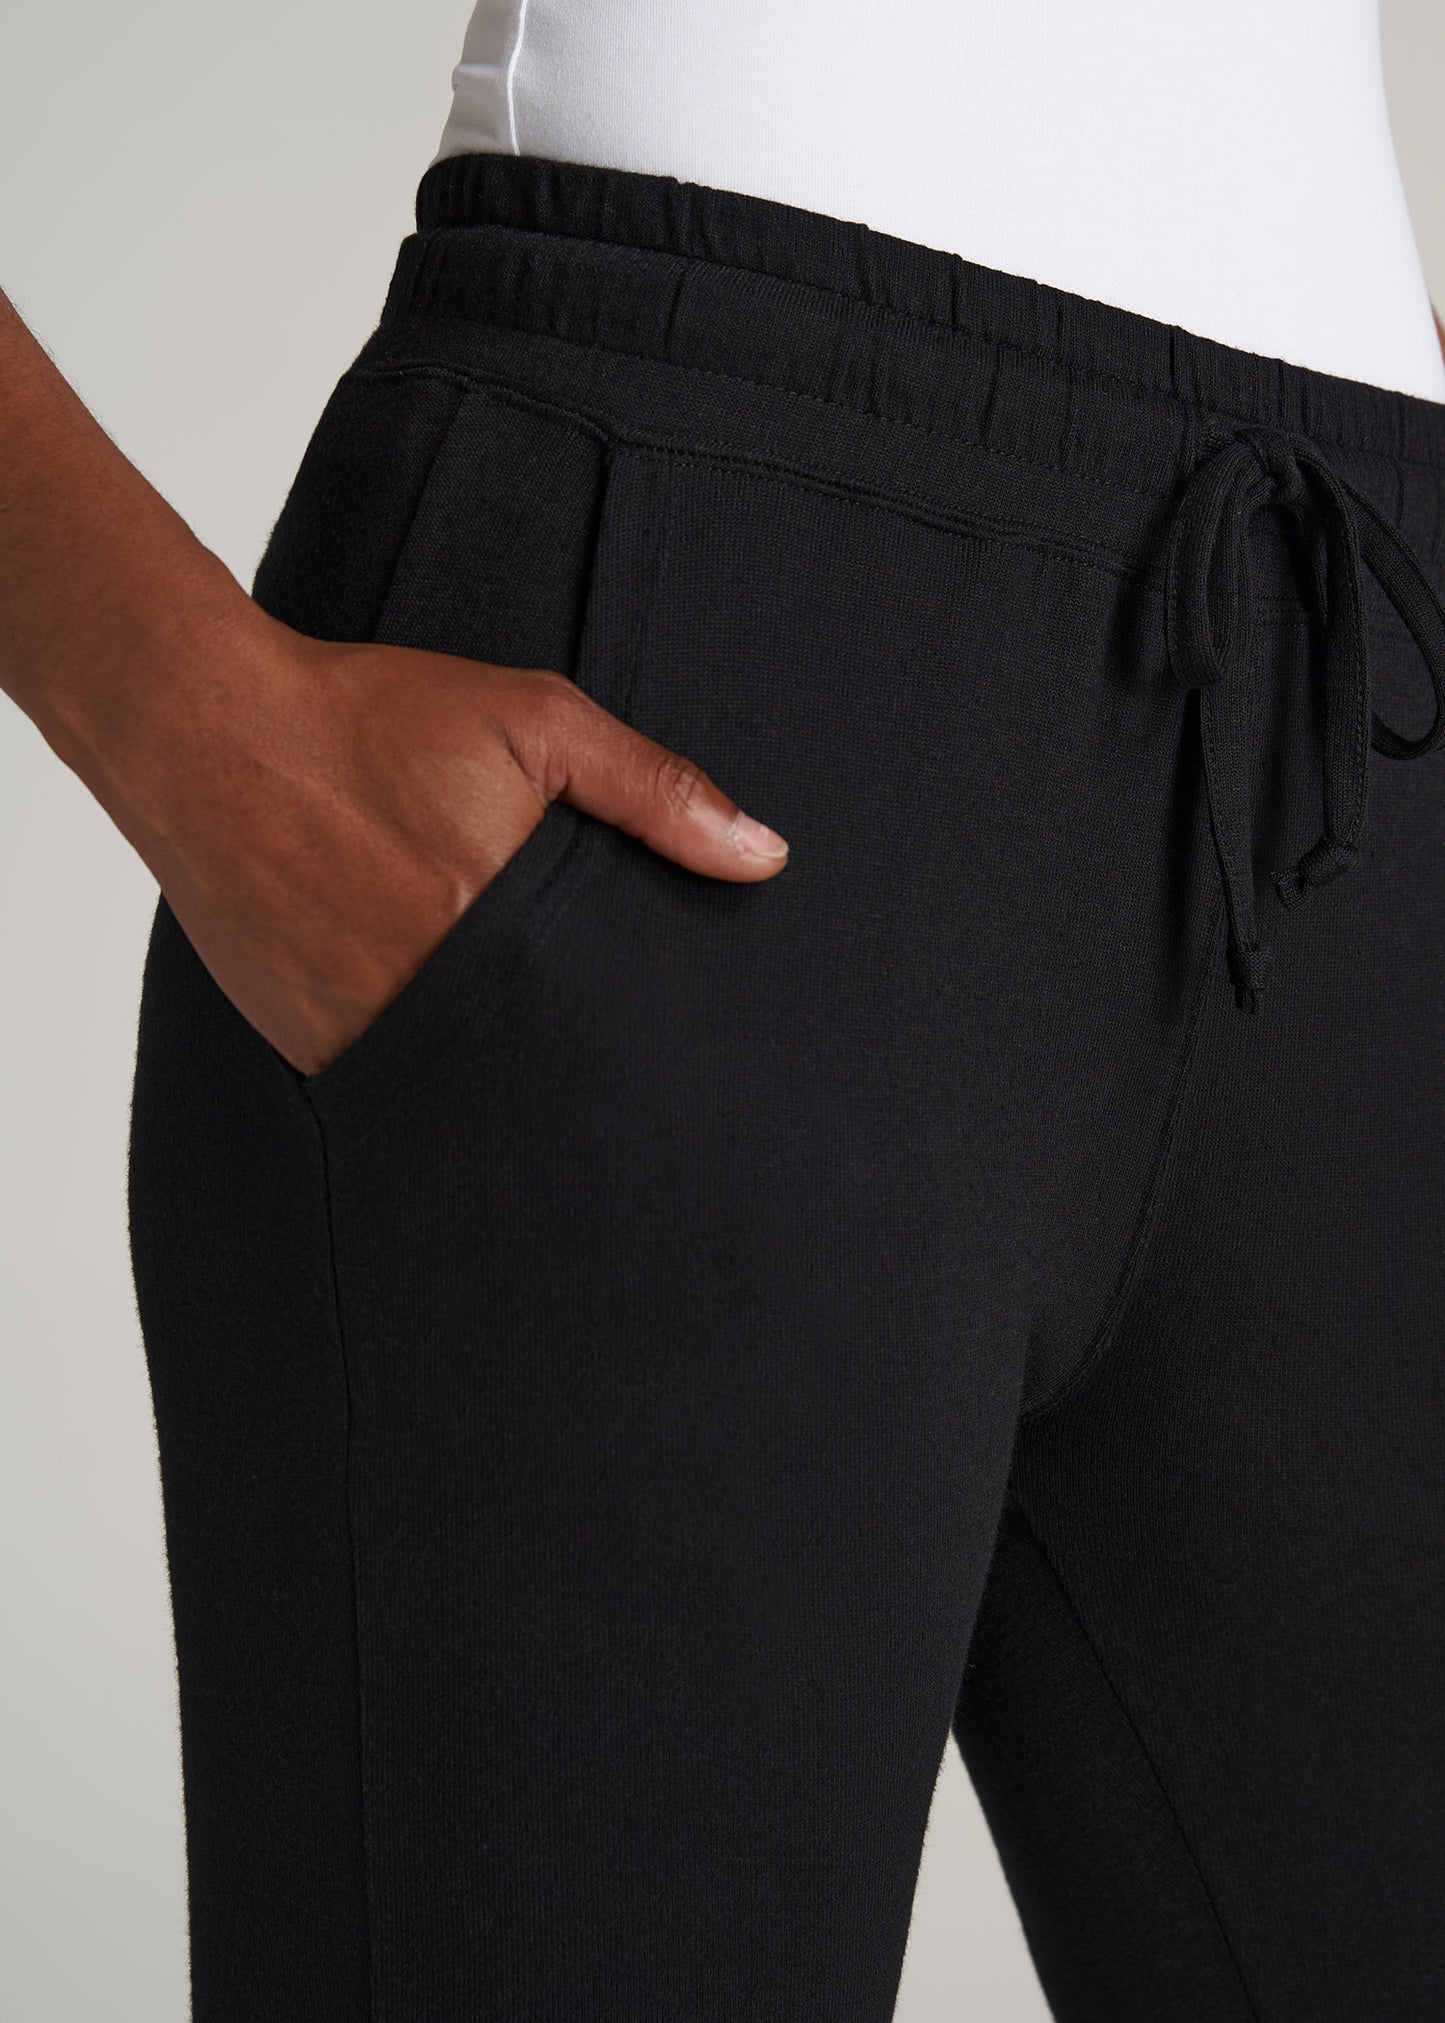 Women's Flowy Lounge Pants - Black